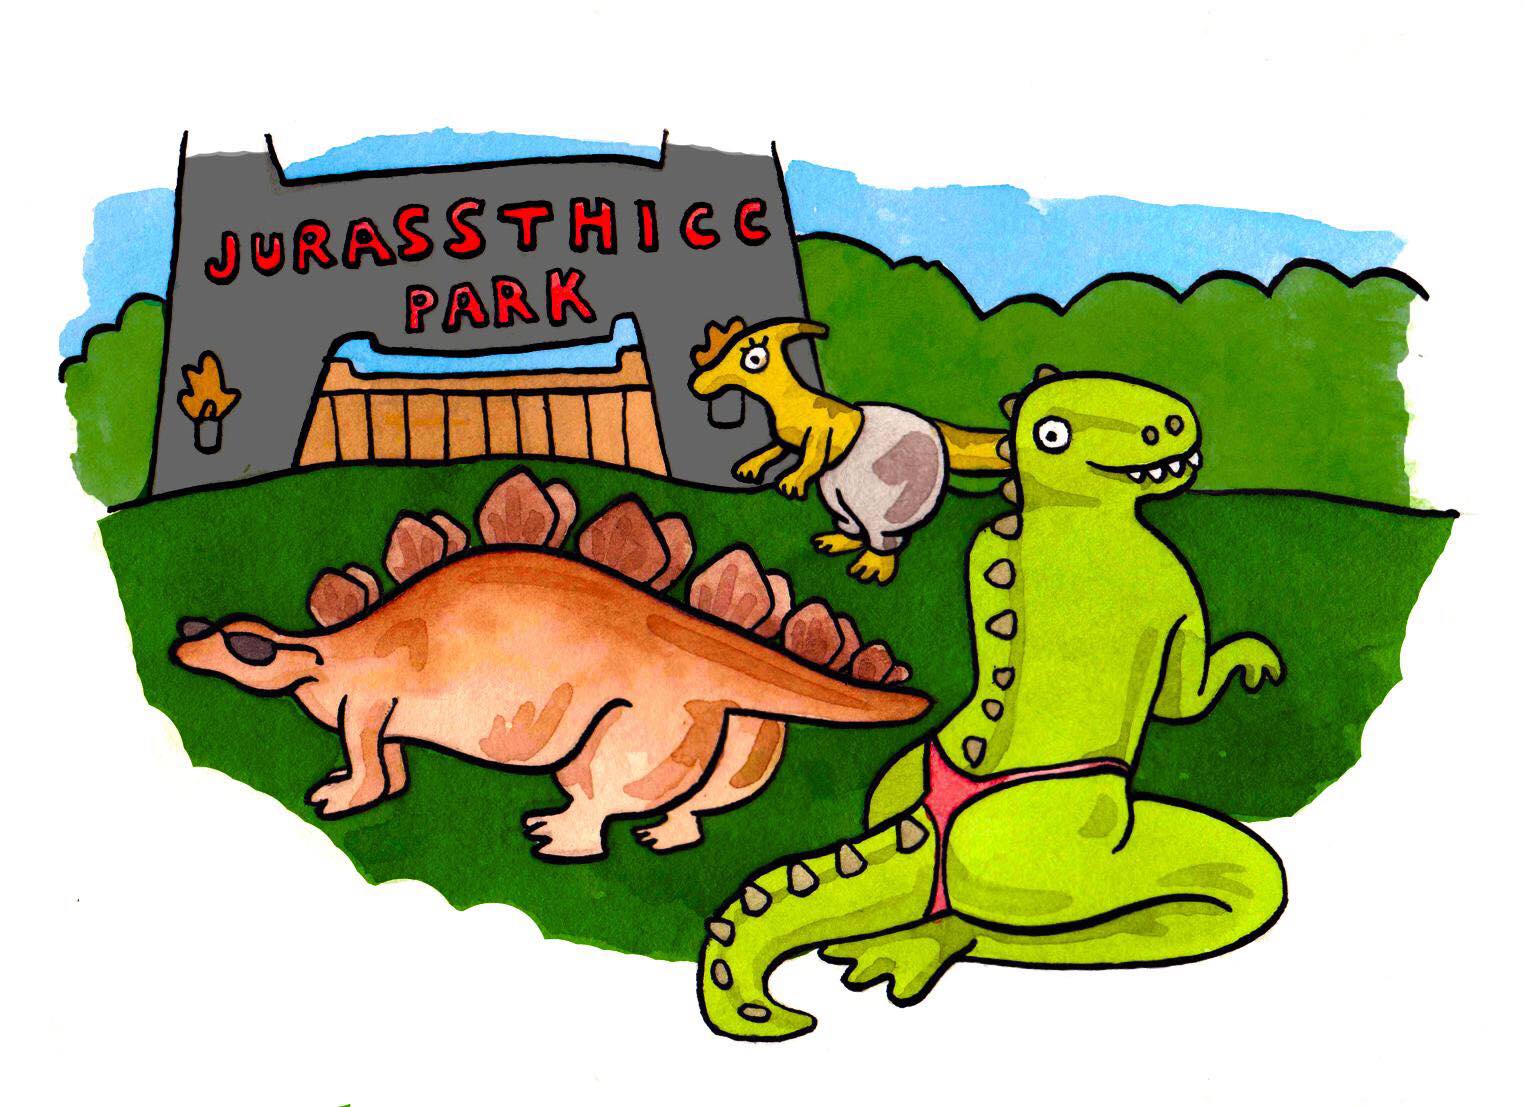 funny cartoon of jurassthicc park